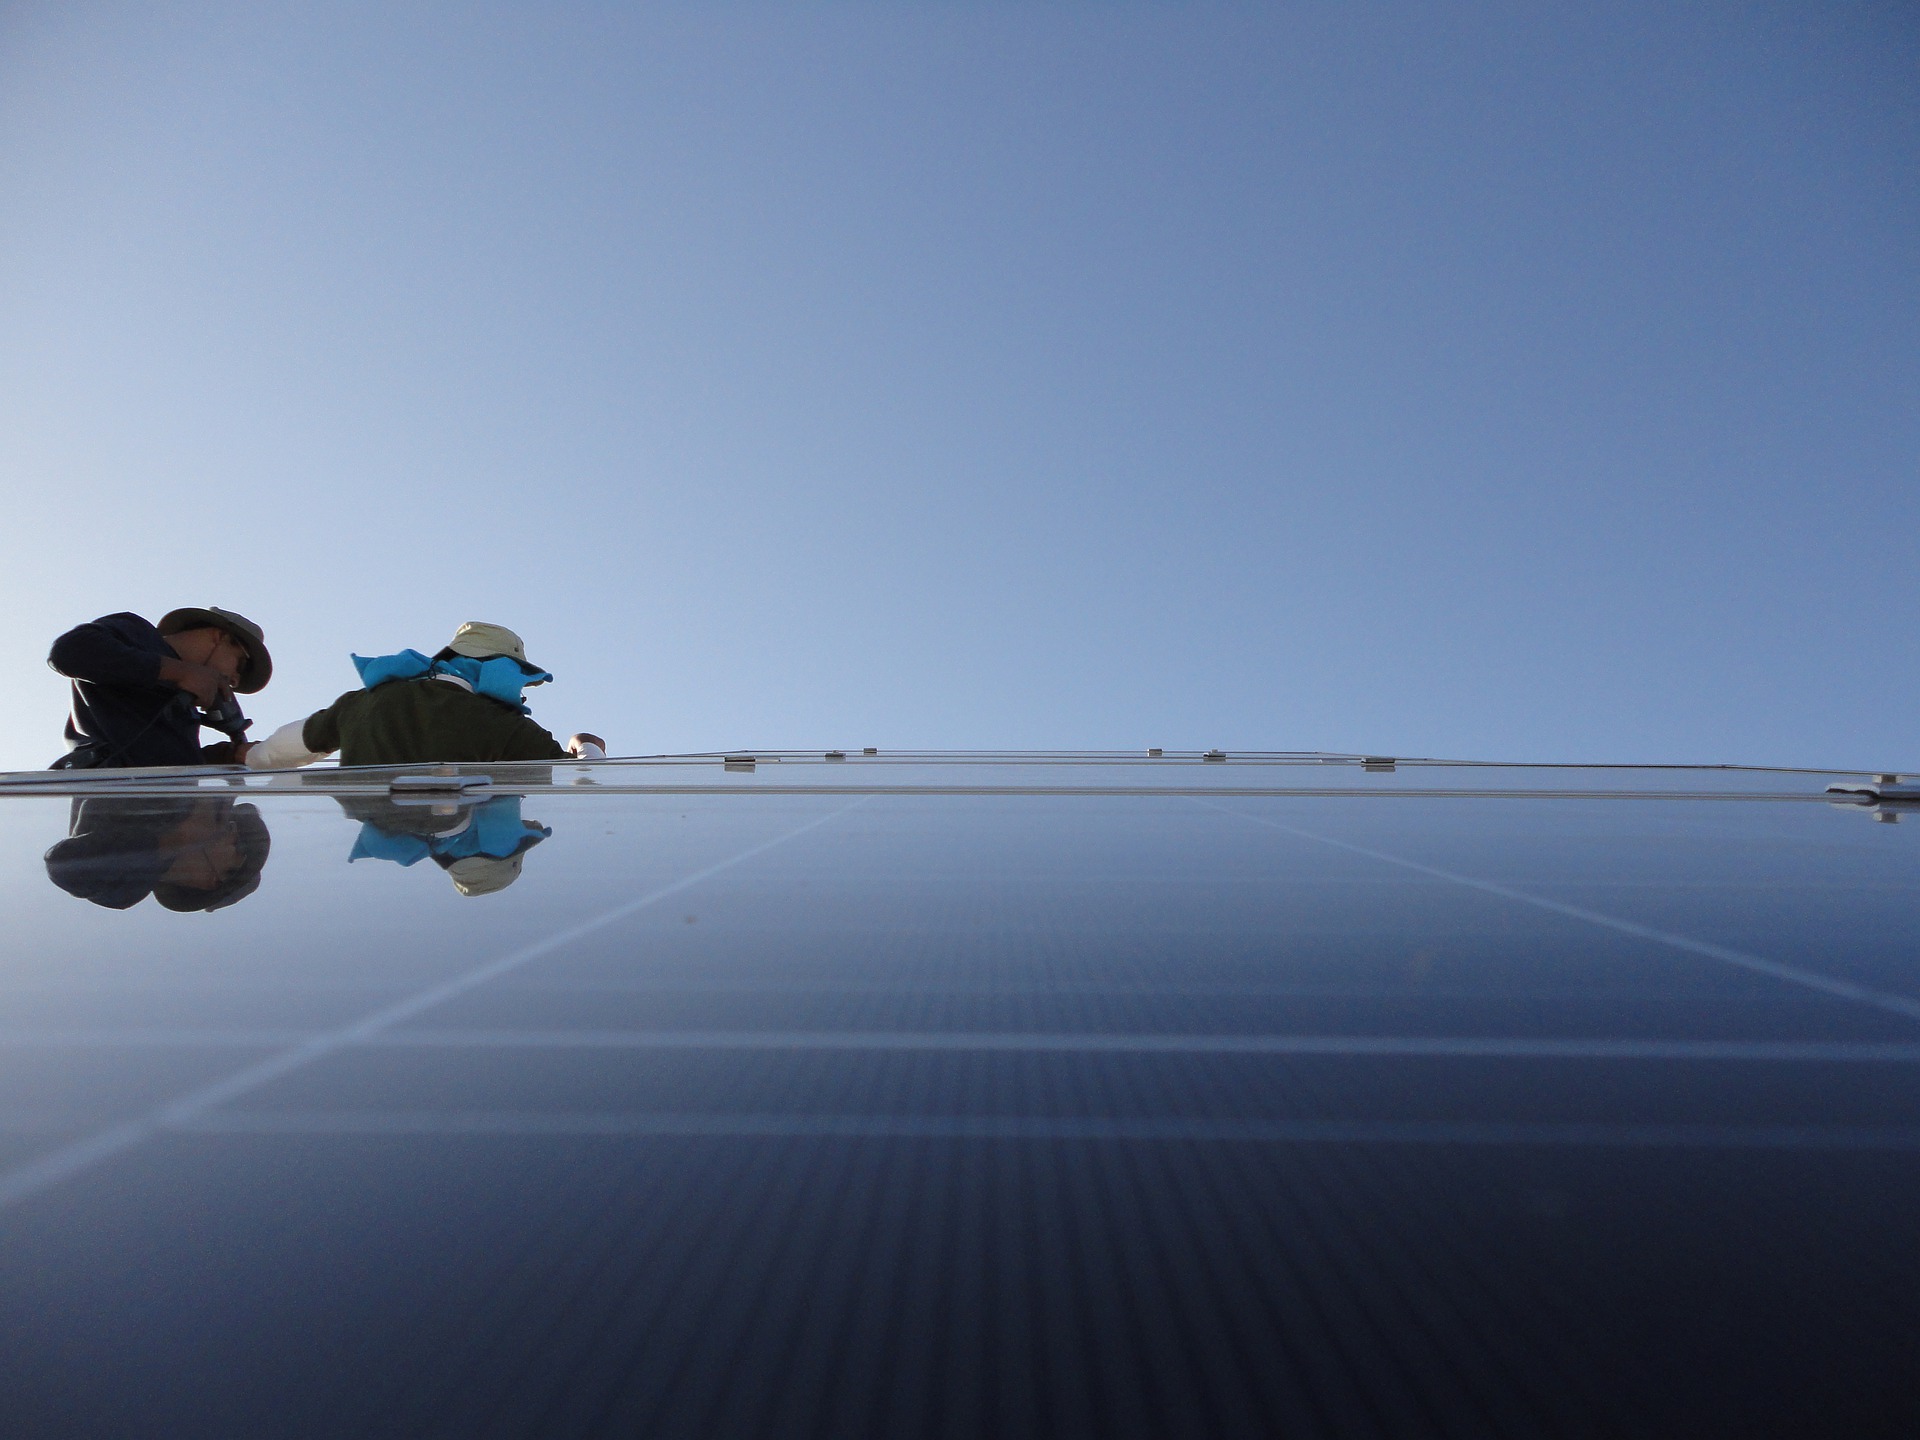 Geração distribuída atinge 11 GW no Brasil. Na imagem, dois técnicos instalam placas fotovoltaicas em telhaddo (Foto: Jacob Totolhua/Pixabay)